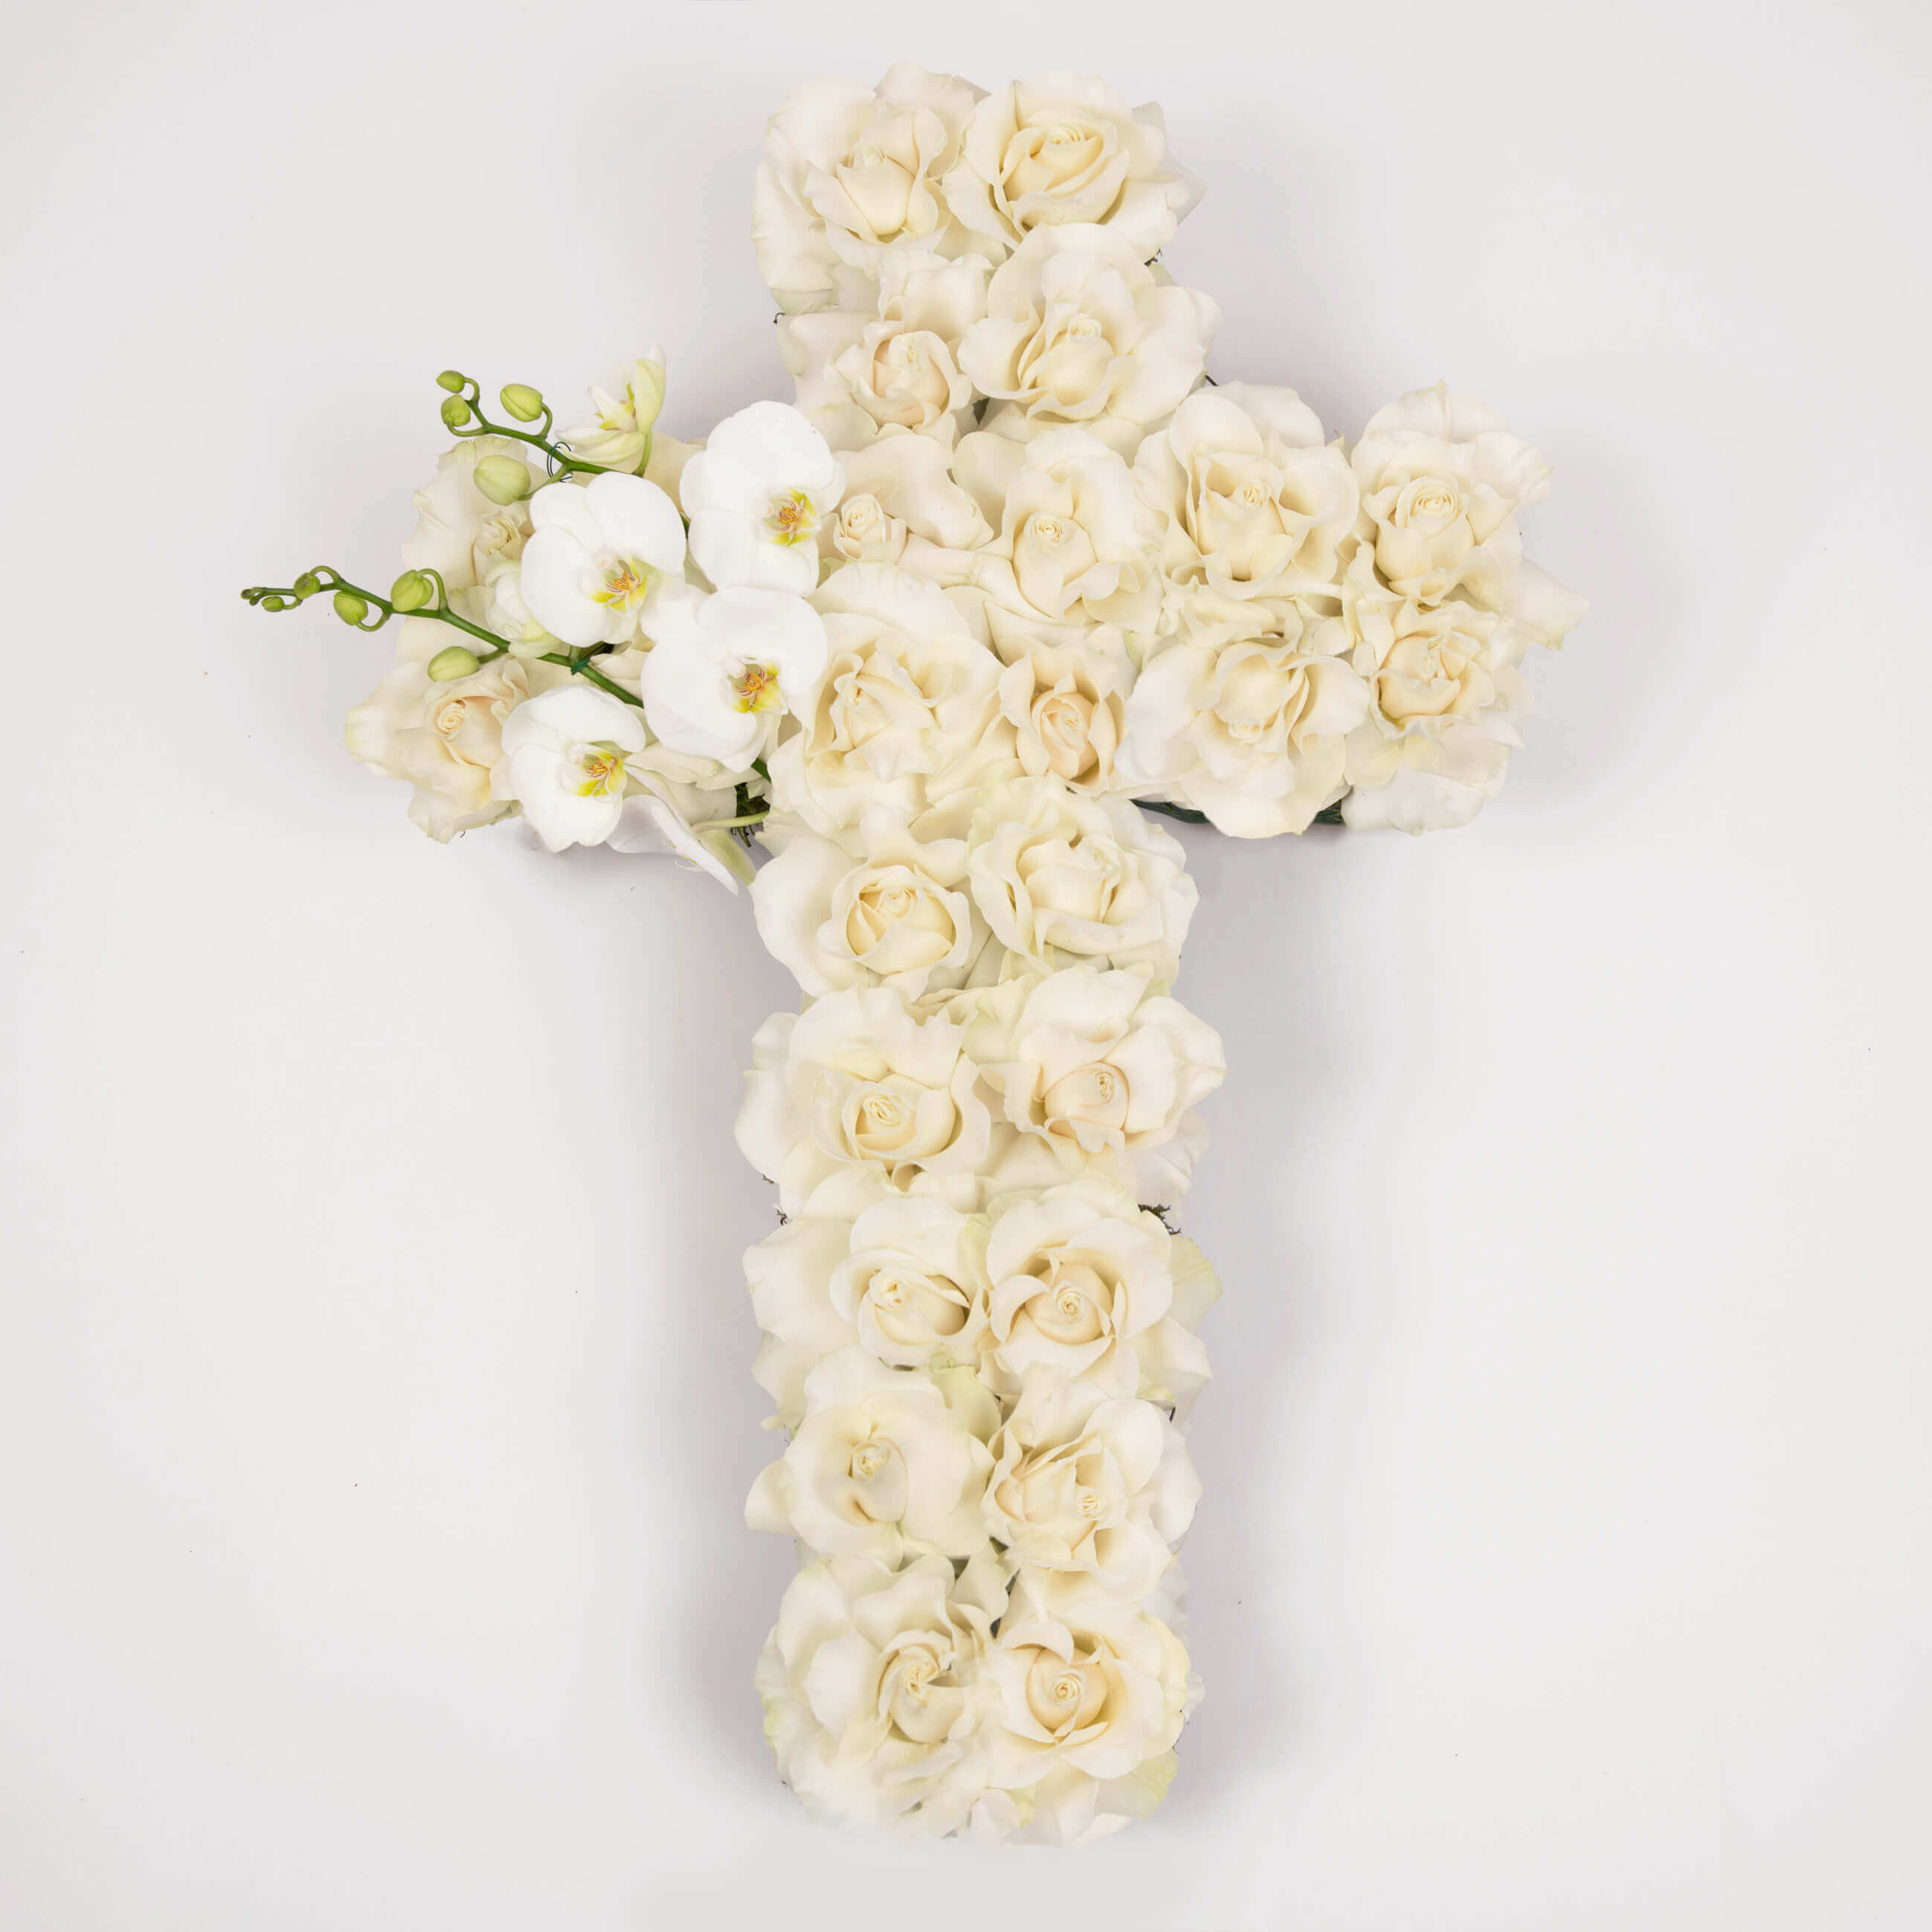 Cruce cu trandafiri albi si phalaenopsis